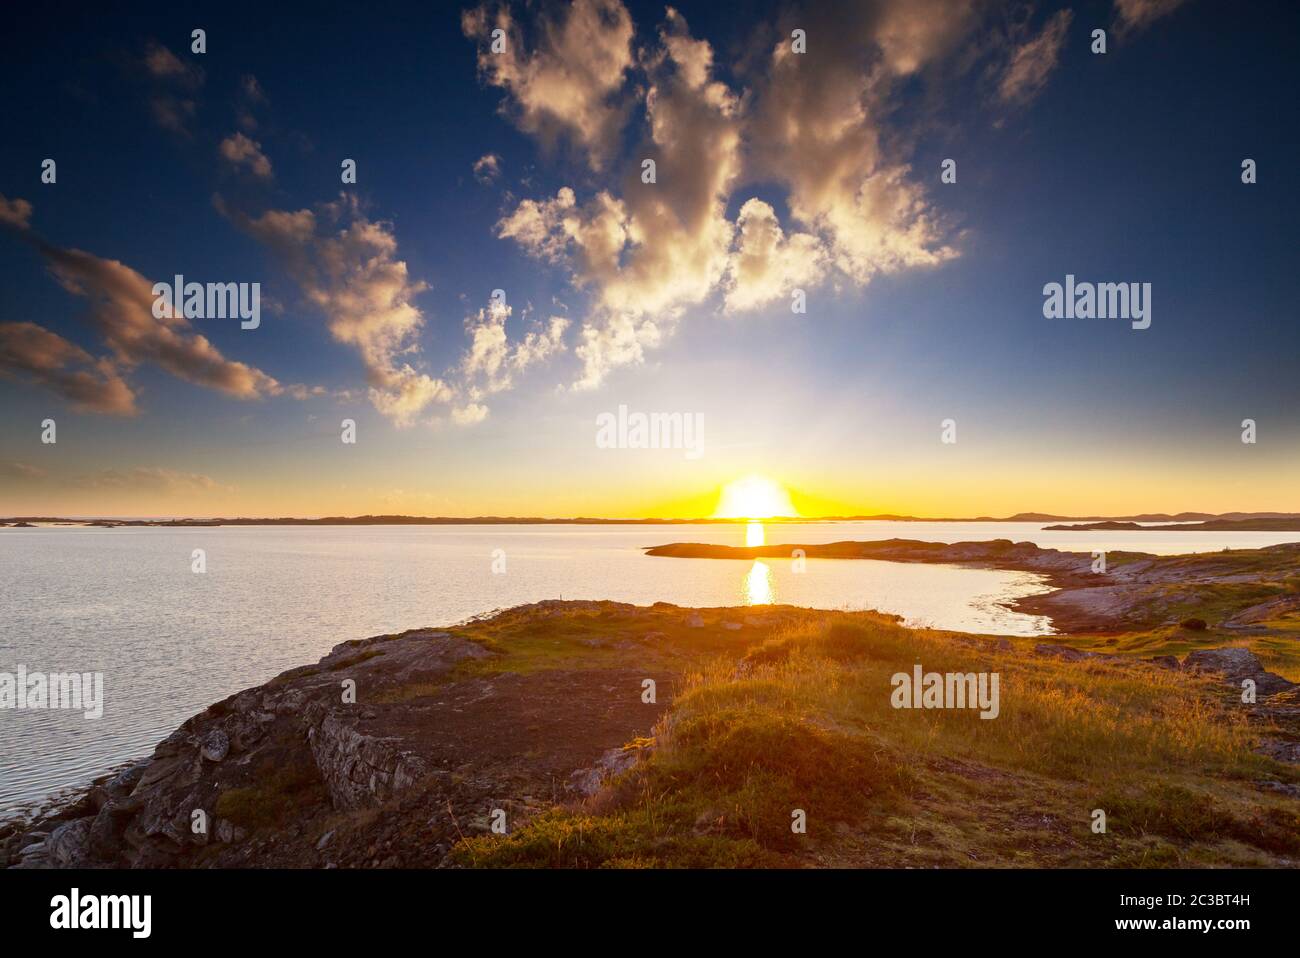 Norway coast Stock Photo